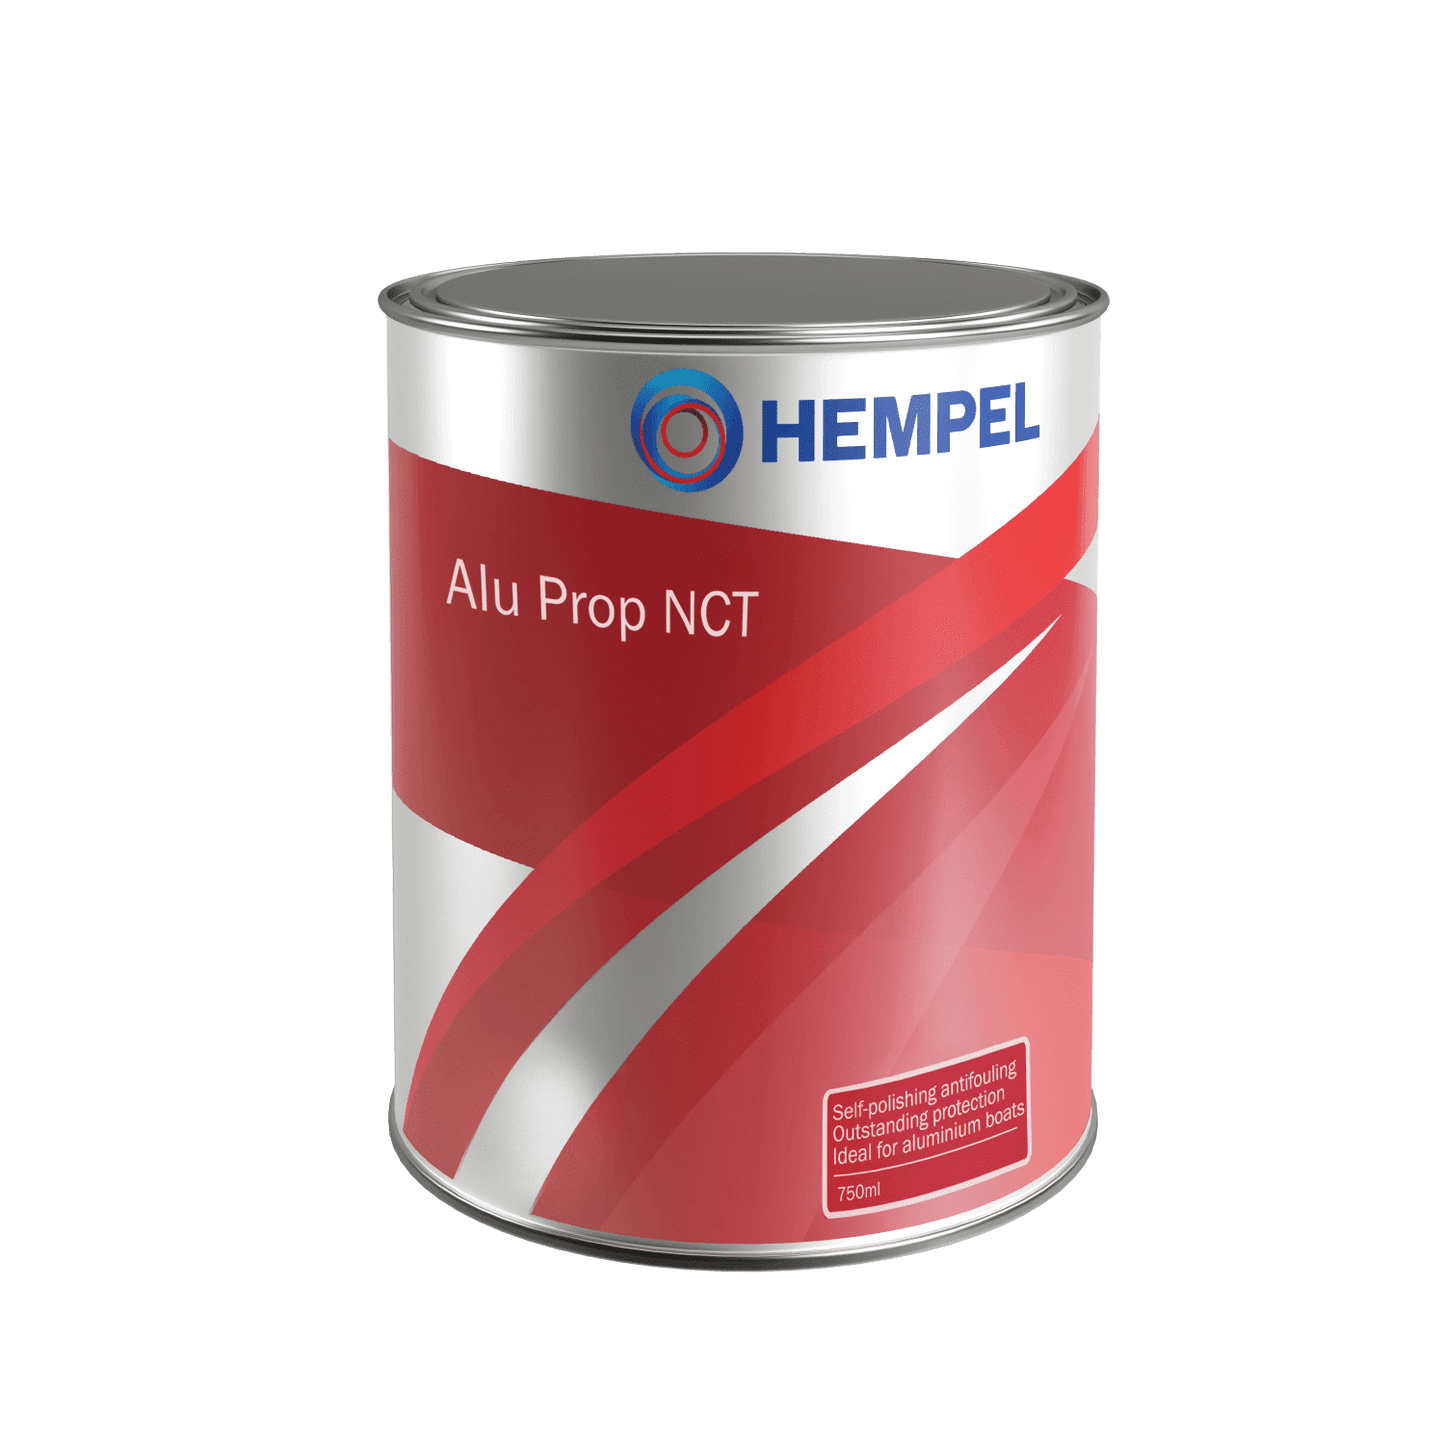 Hempel / Blakes Alu Prop NCT Self-Polishing Antifouling - 750ml